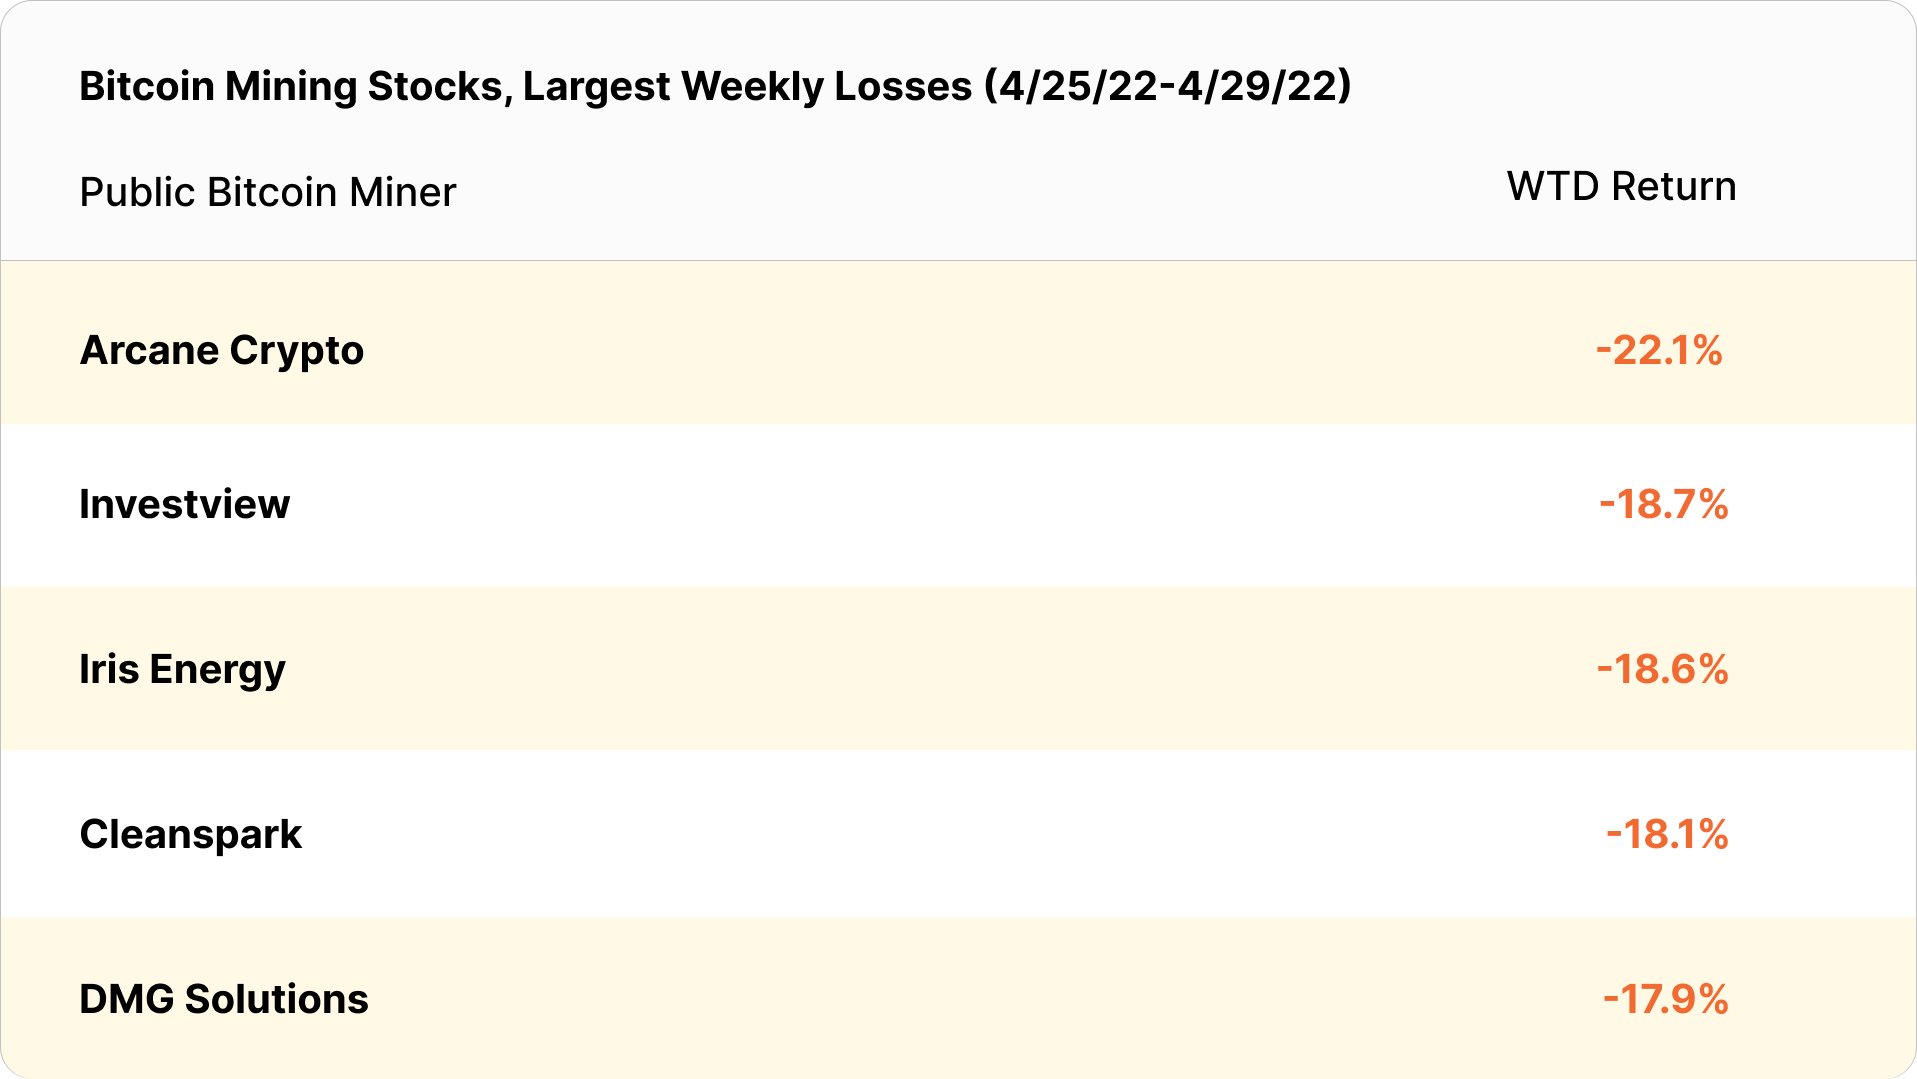 bitcoin mining stocks weekly losses (April 25 - April 29, 2022)